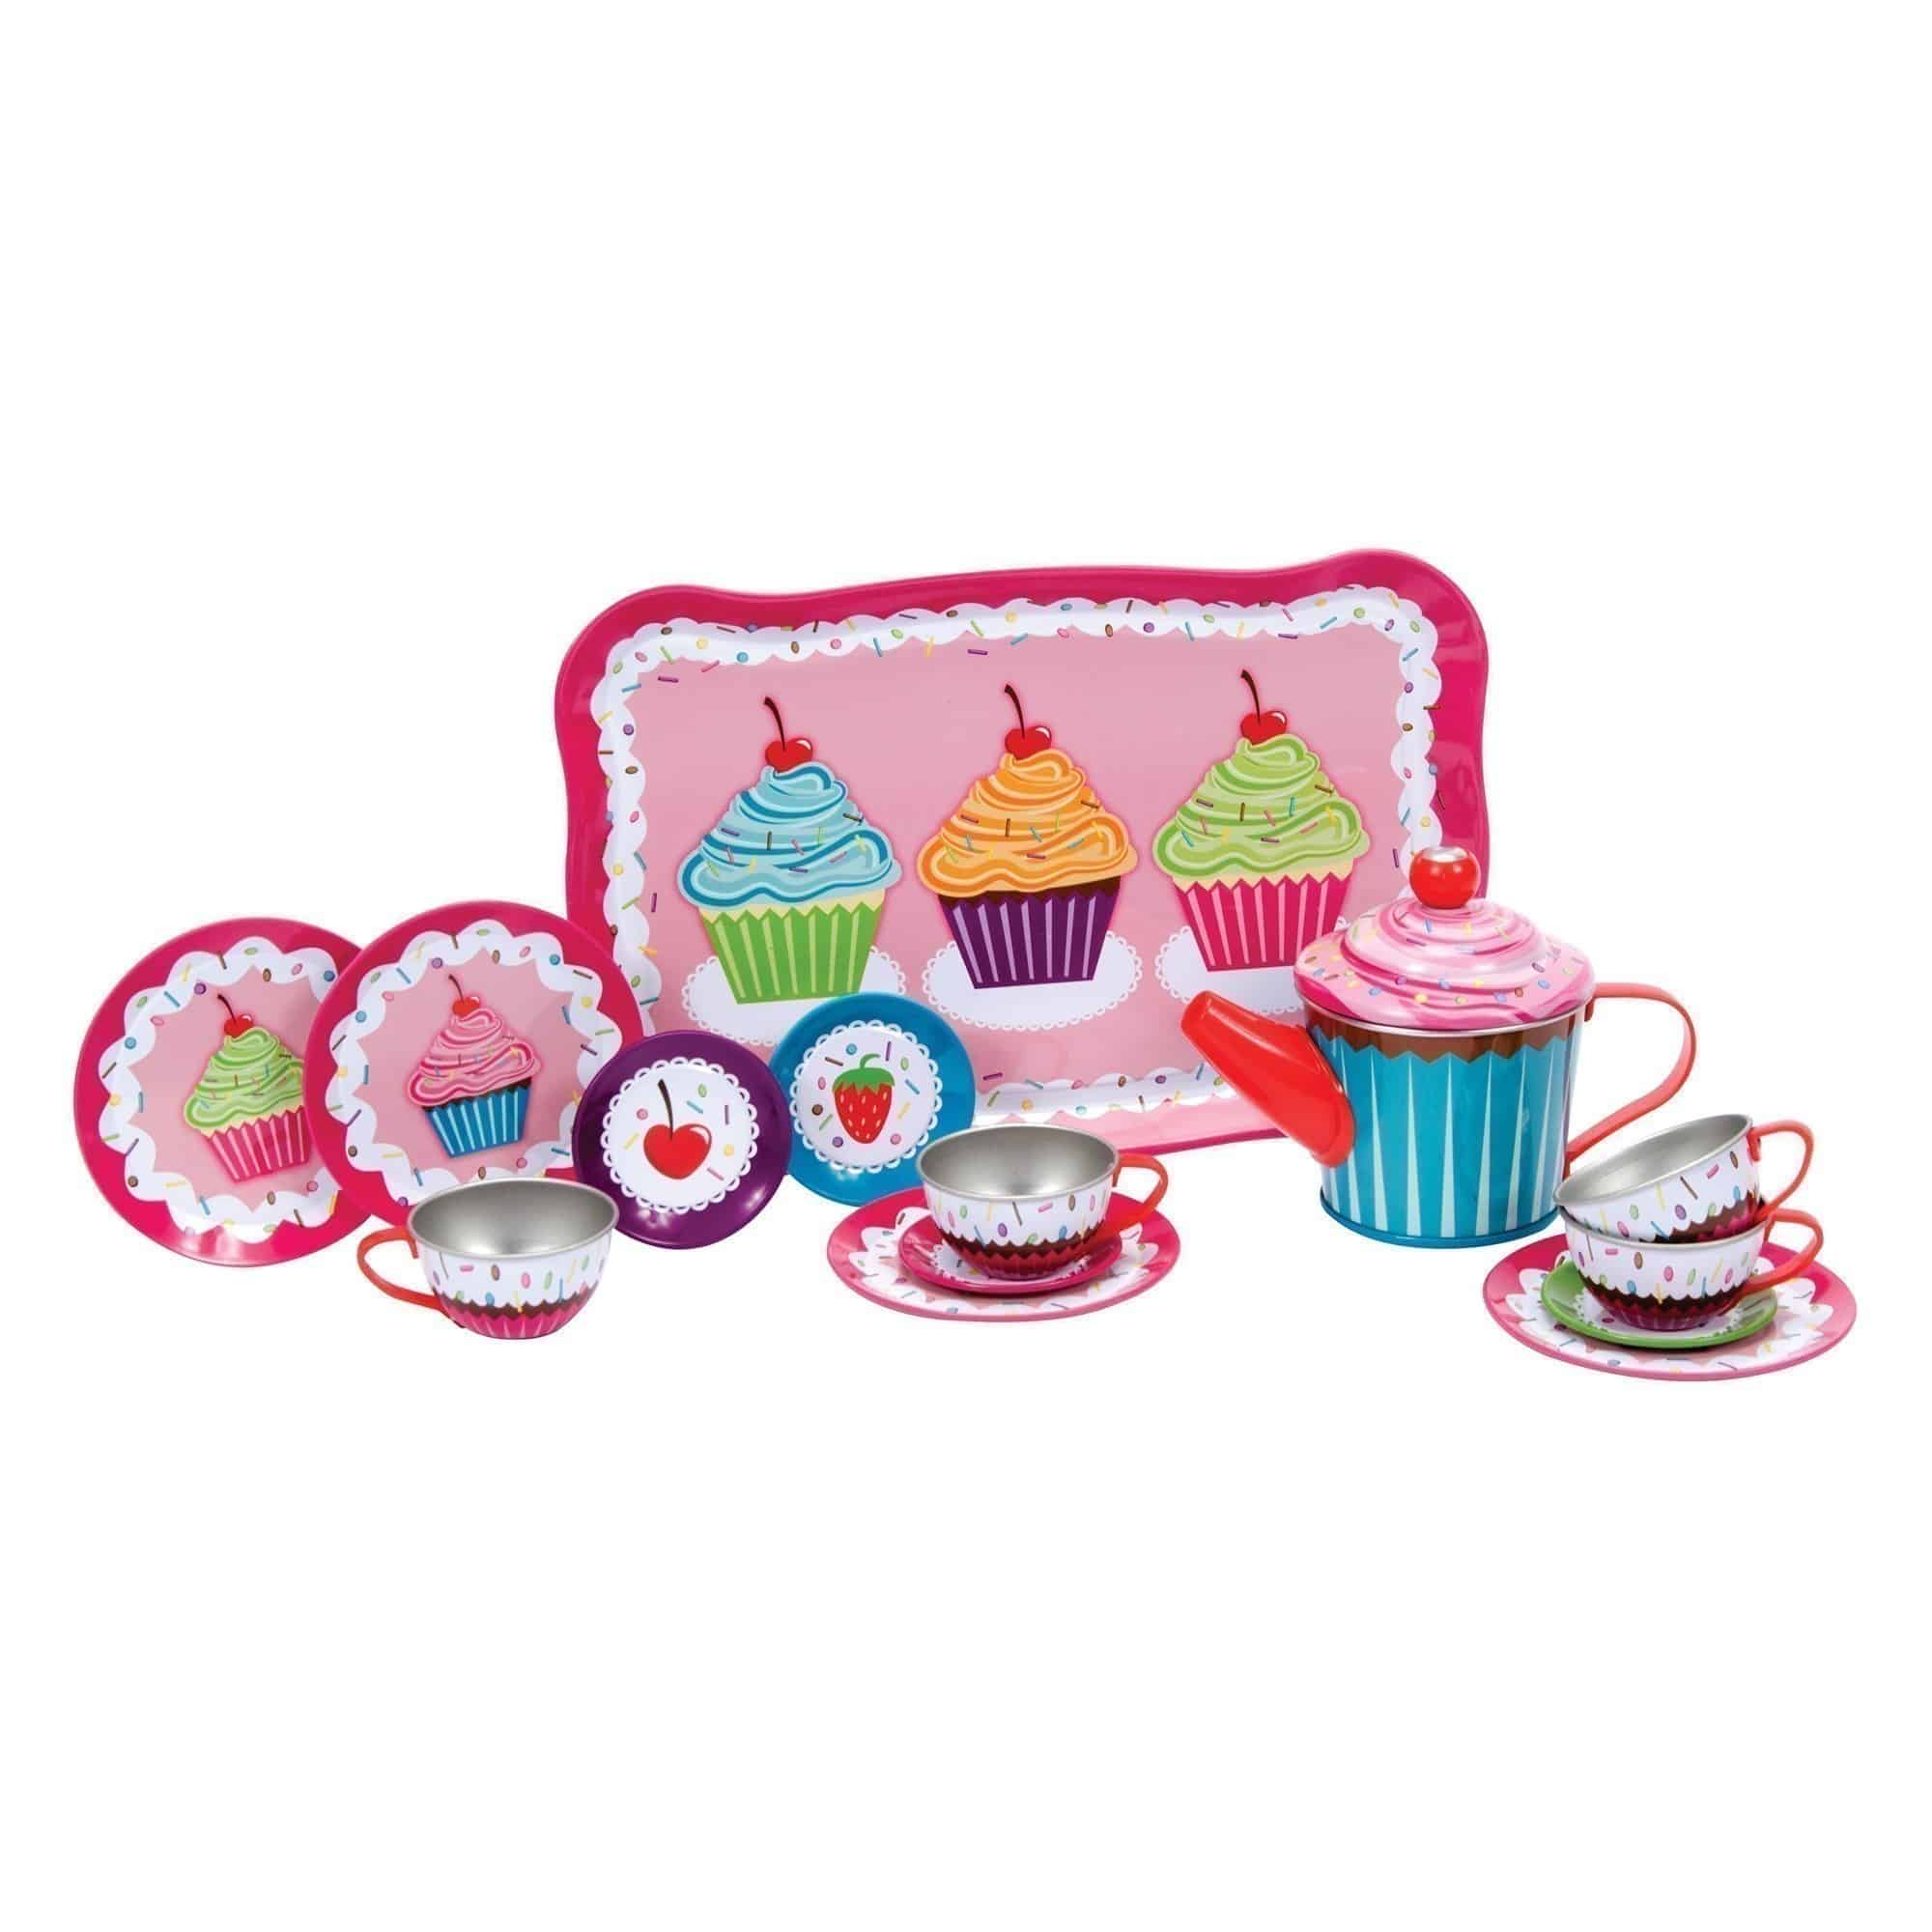 Schylling - Cupcakes Tea Set